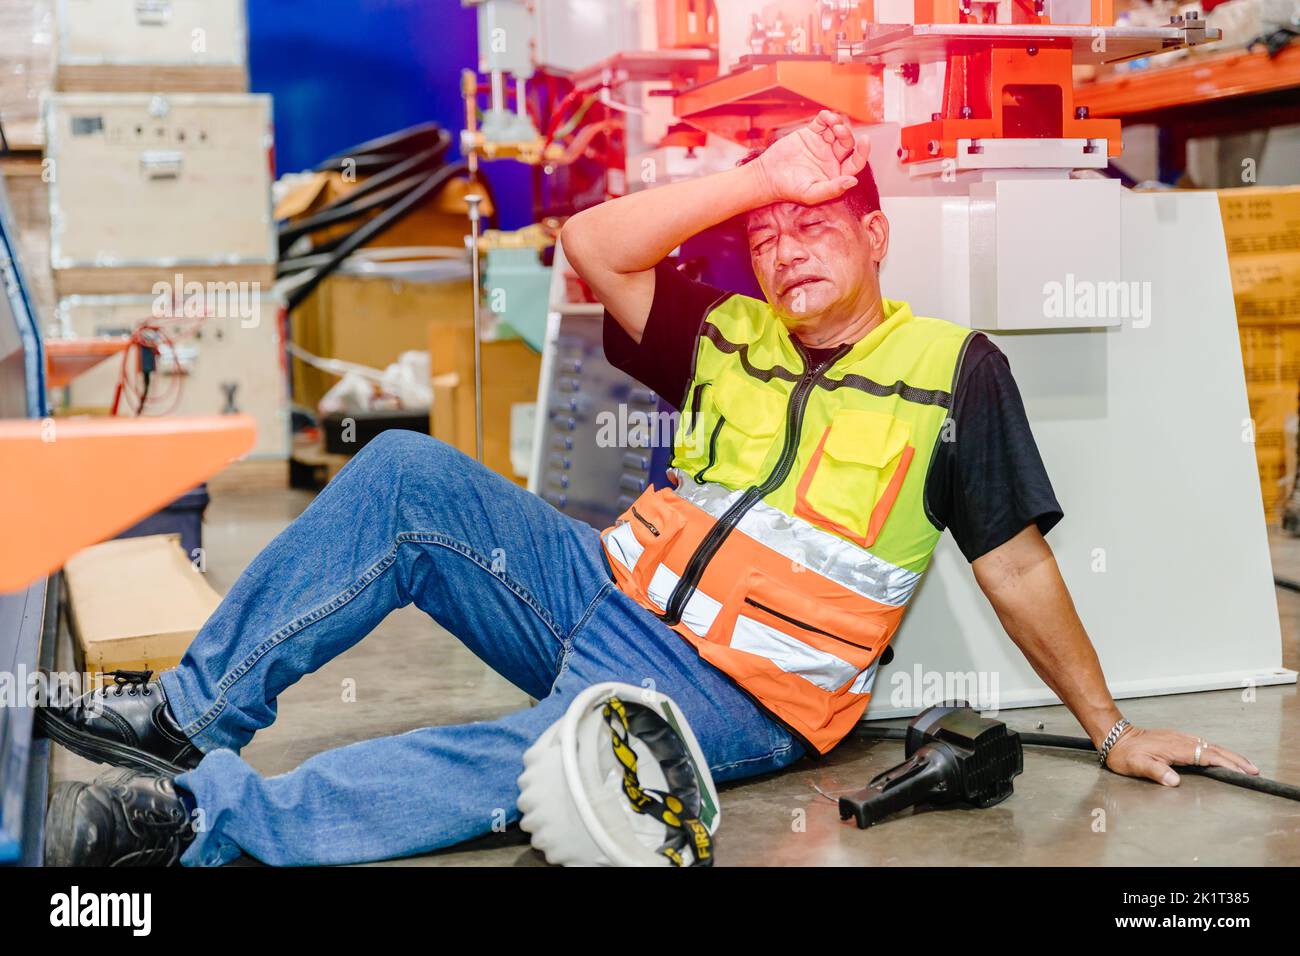 Travailleur asiatique personnel d'ingénieur de l'industrie homme maladie de la grippe mal de tête inconfortable sur le sol besoin d'aide médicale d'urgence. Banque D'Images